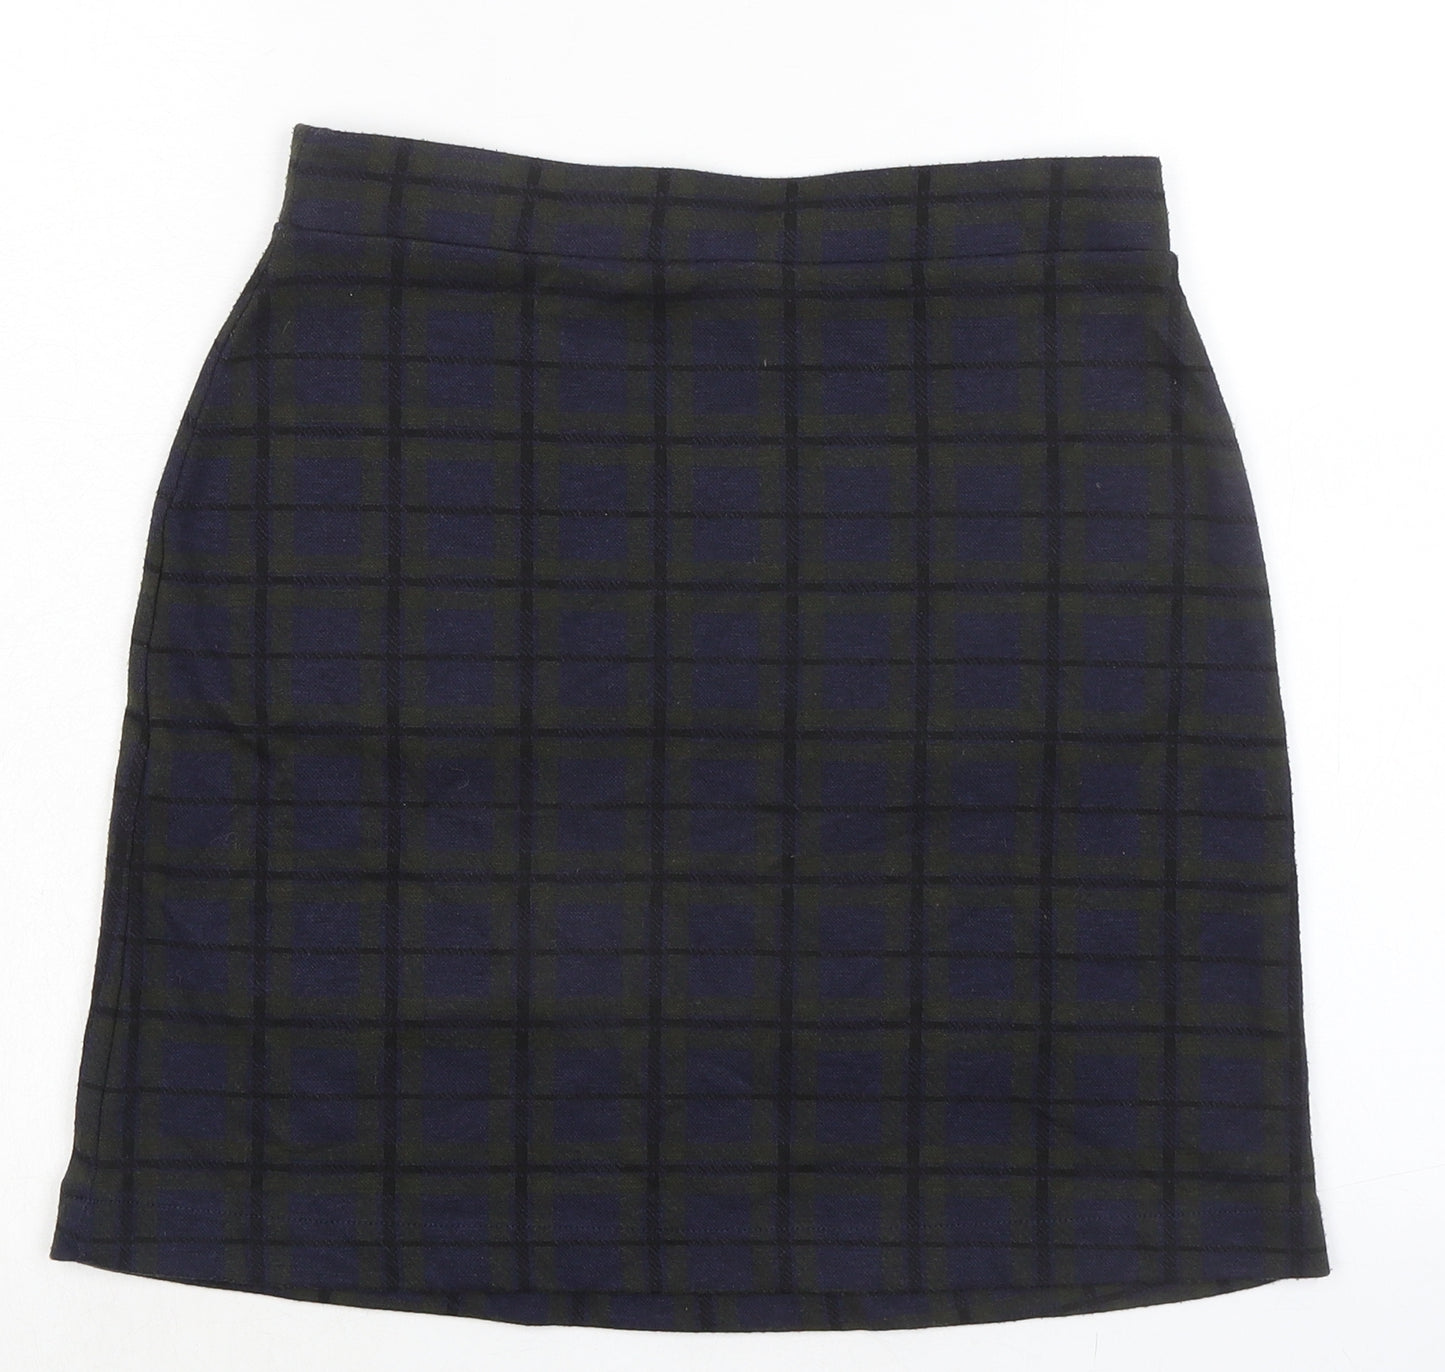 NEXT Womens Blue Plaid Cotton A-Line Skirt Size 8